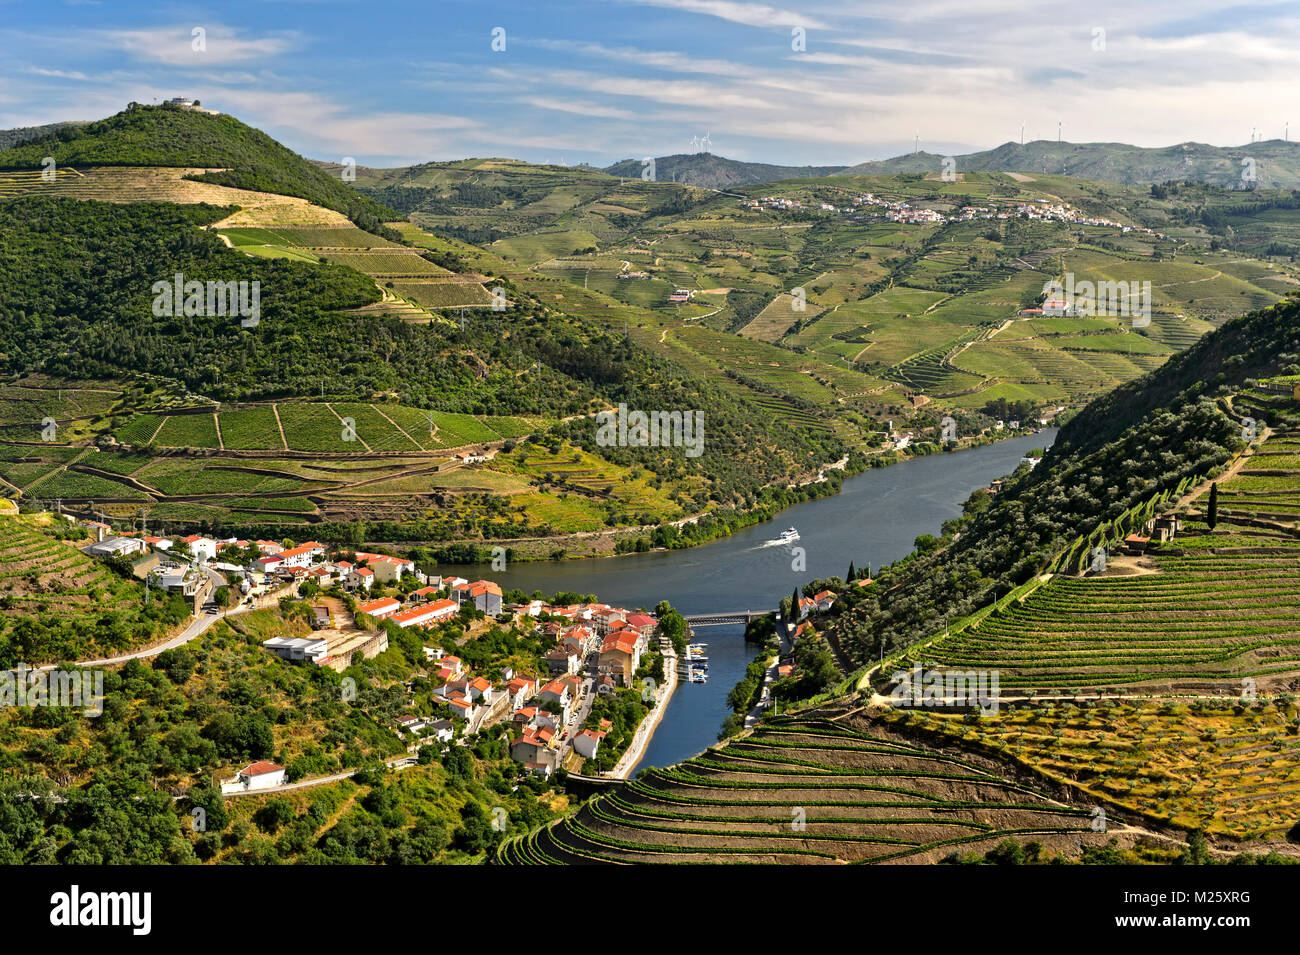 La ville de Pinhão par surroujnded vignobles en terrasses dans la vallée du Douro, région viticole du Haut-Douro, Pinhão, Portugal Banque D'Images